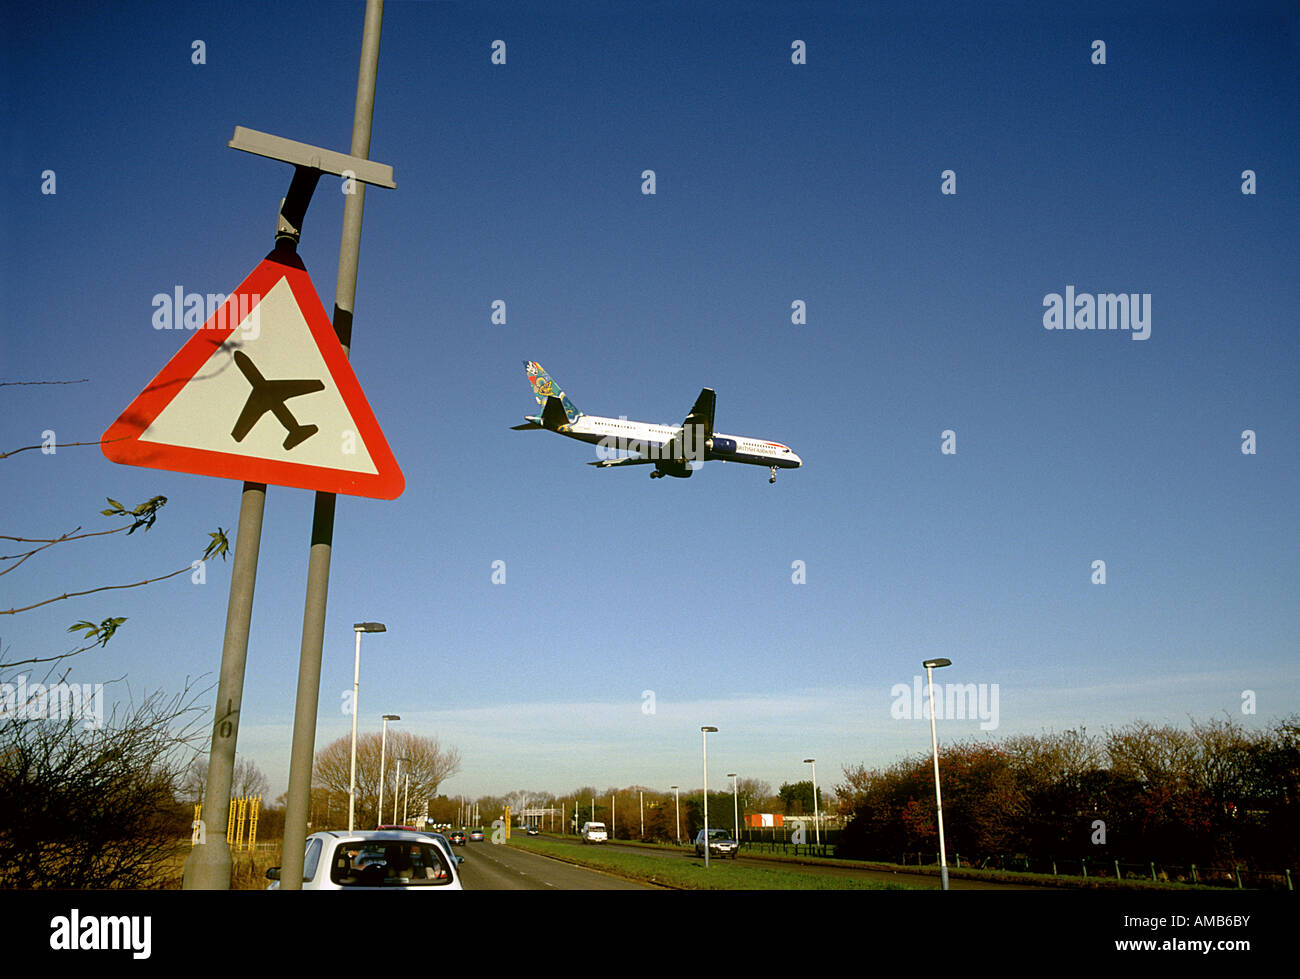 Avion volant bas road sign avec un avion à l'atterrissage à l'aéroport de Heathrow en arrière-plan Banque D'Images